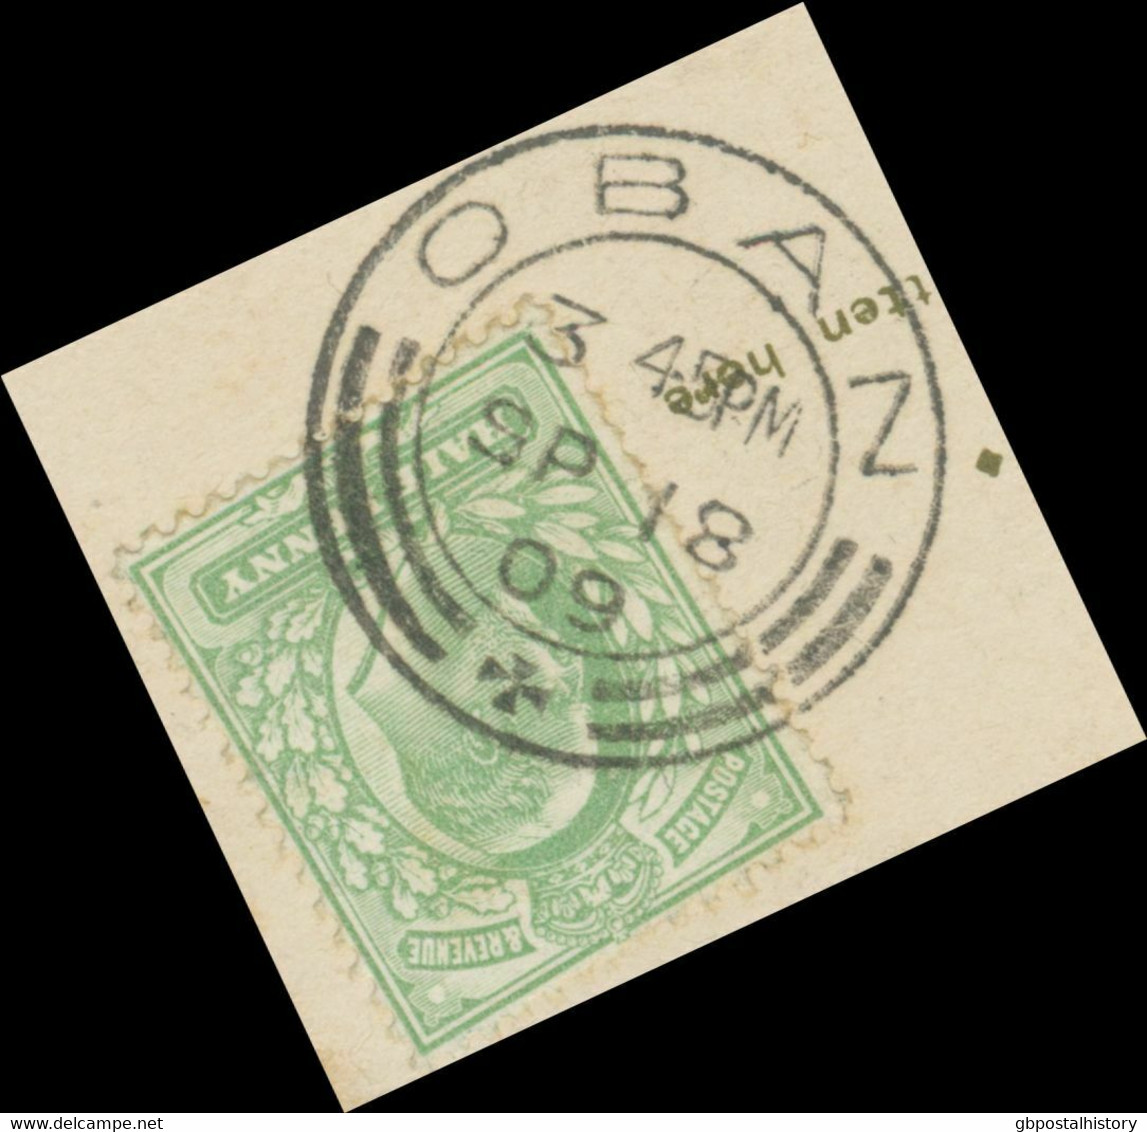 GB SCOTTIS VILLAGE POSTMARKS „OBAN“ Superb Rare Strike (25mm, Time Code „3 45PM“) Superb Postcard POSTMARK-ERROR - Ecosse